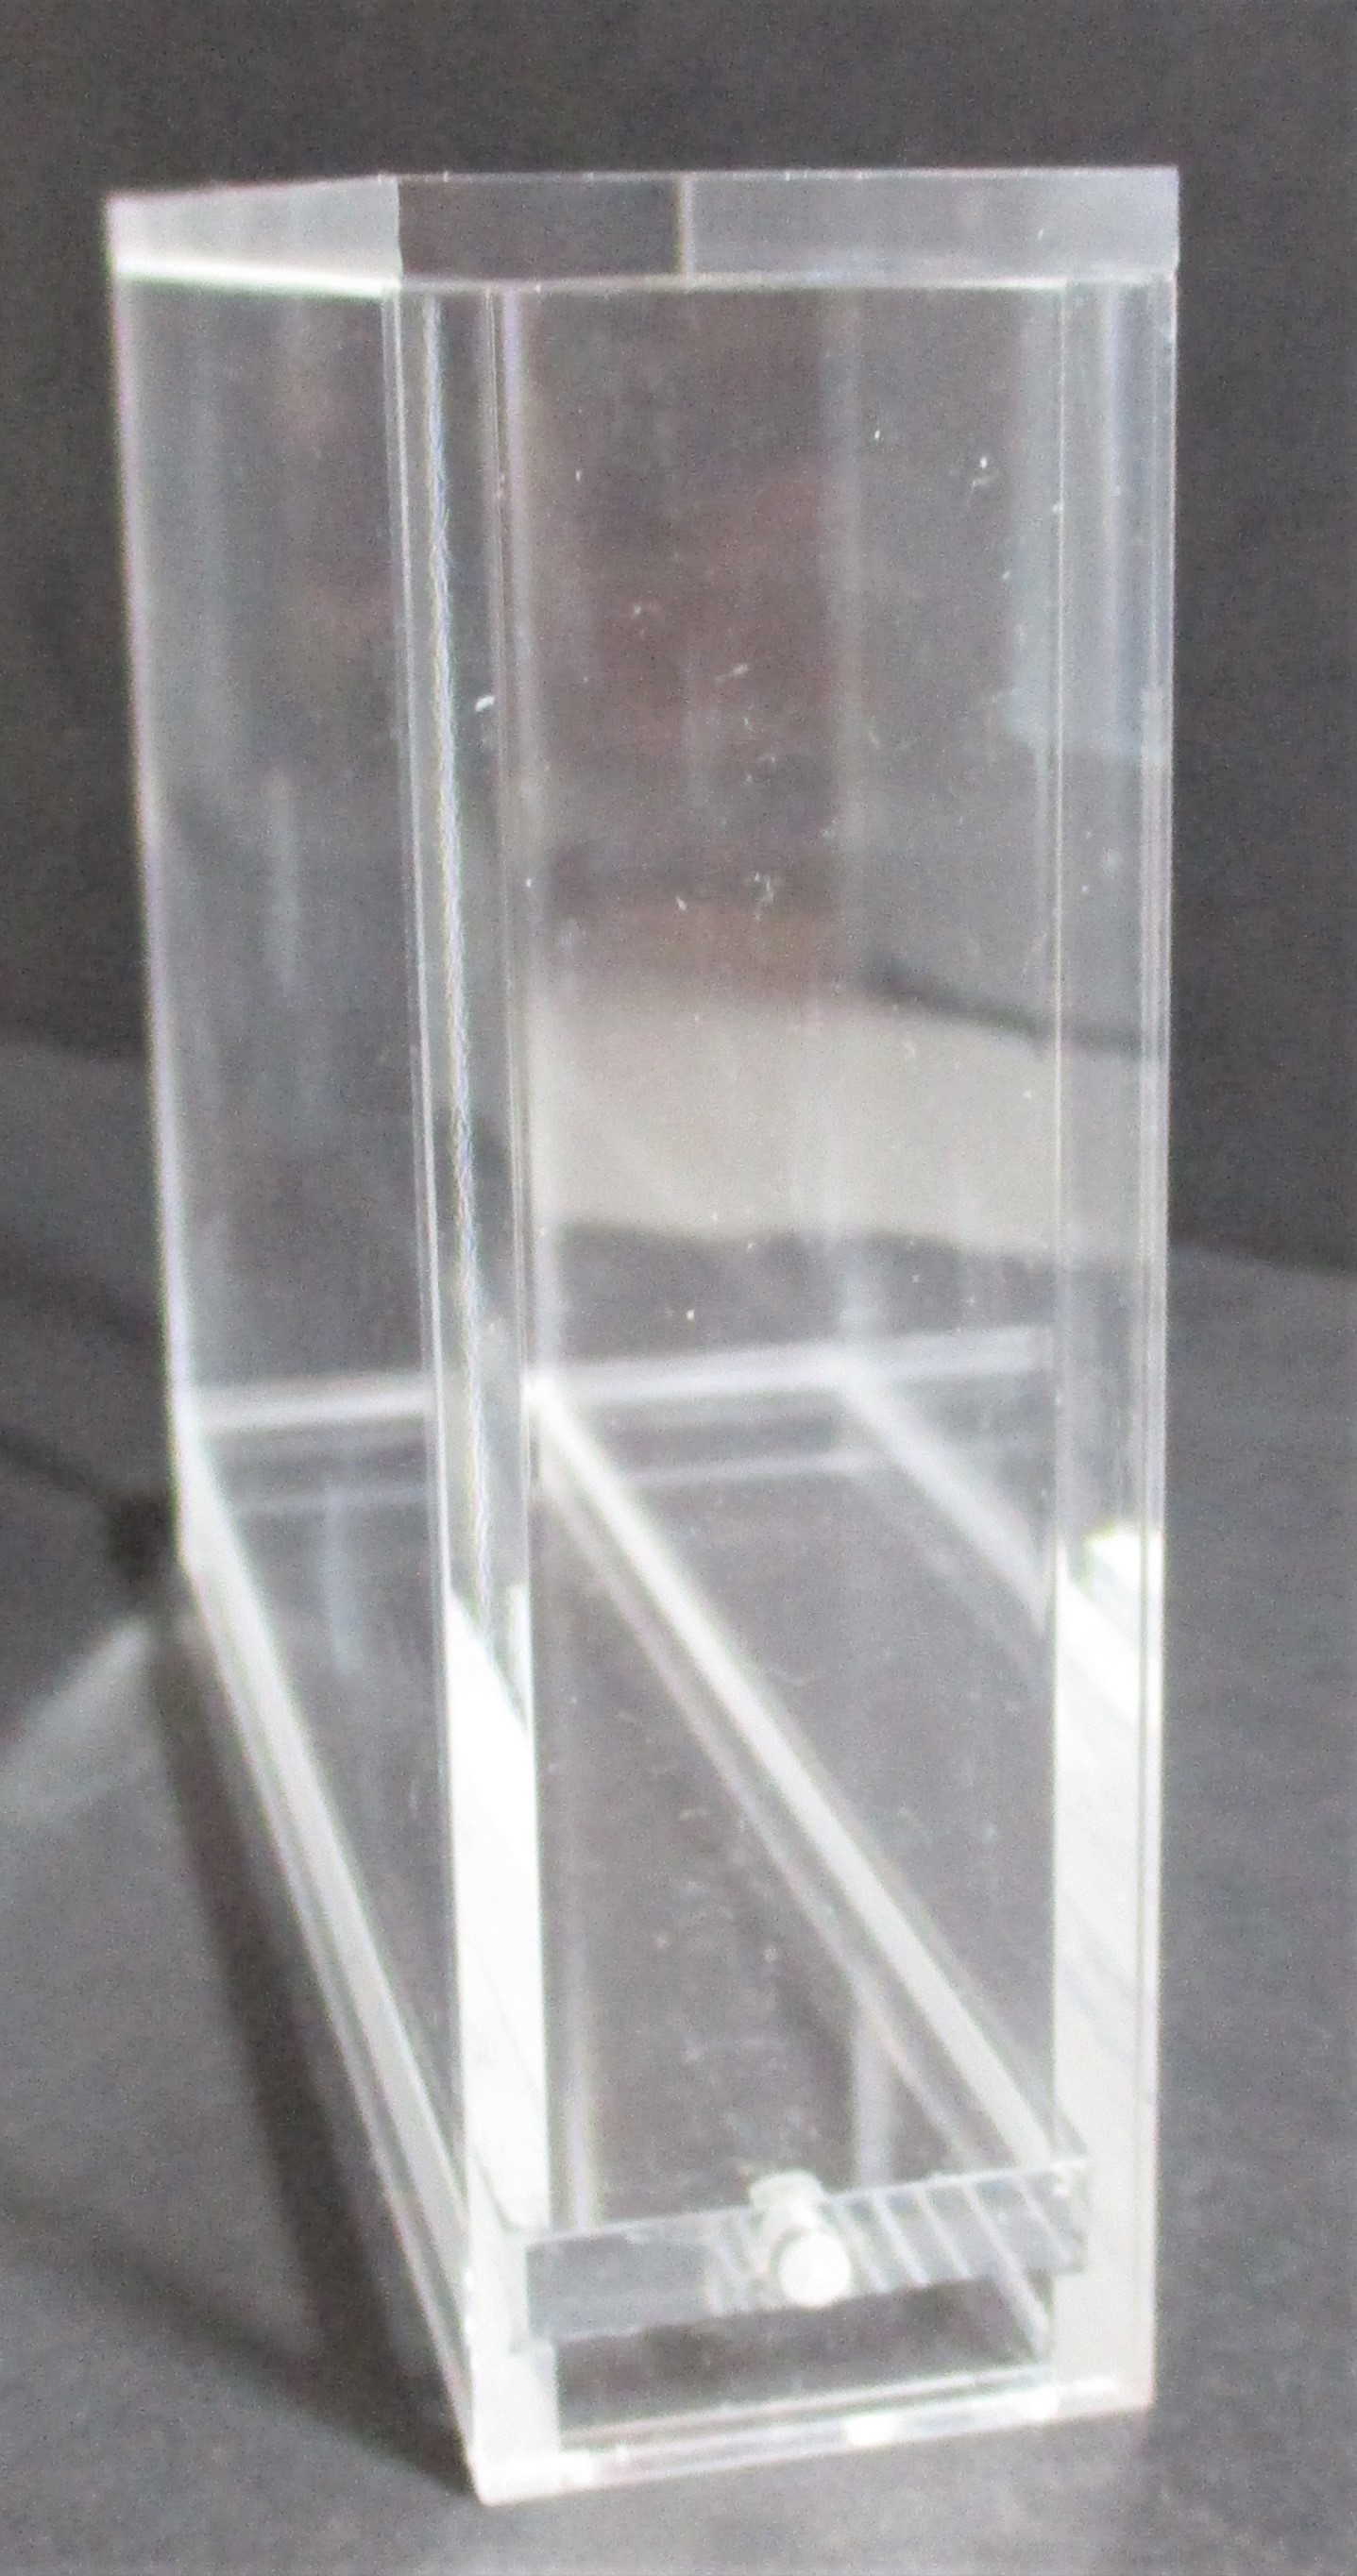 5x N-64 Loose Cartridge Acrylic Display Guard (60034)